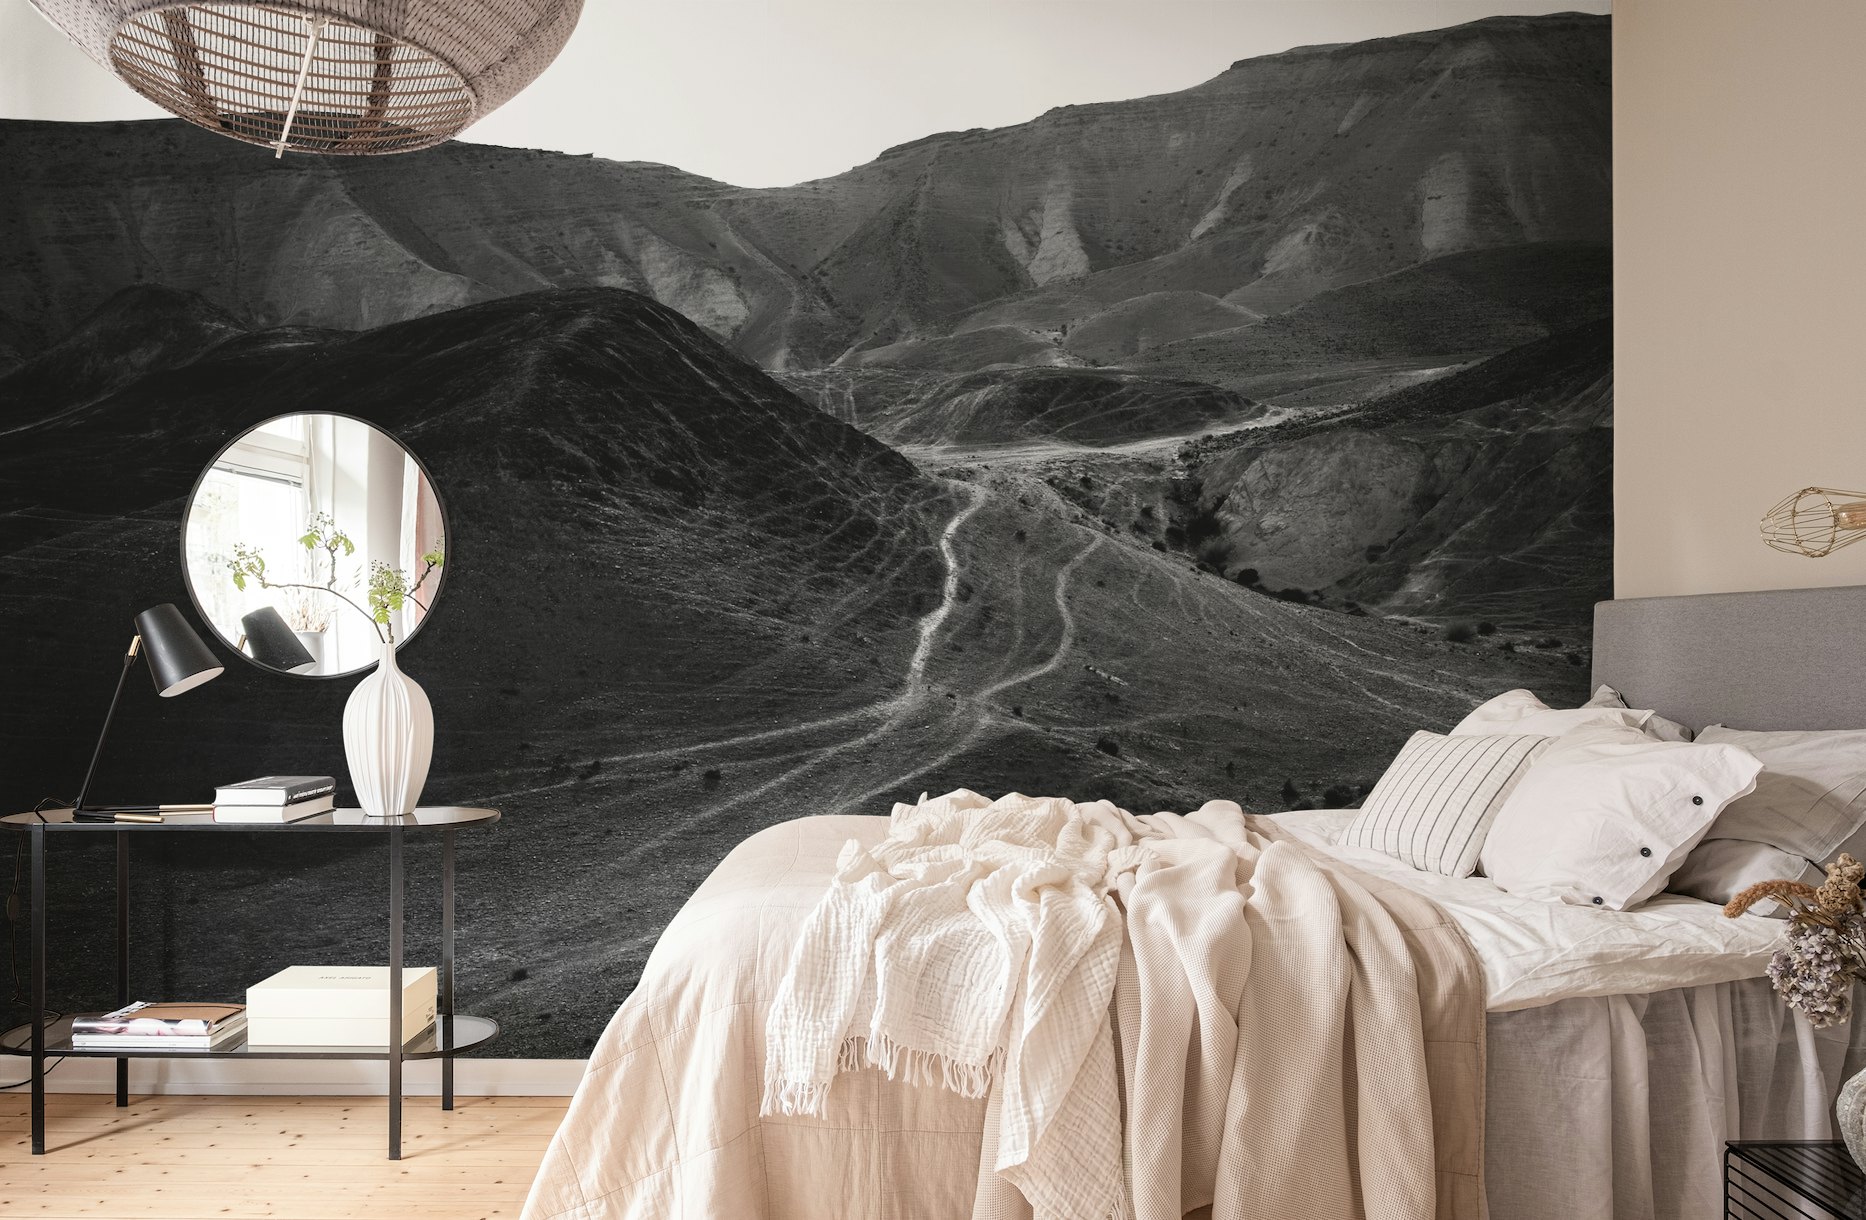 Mountains of the Judean Desert 5 wallpaper